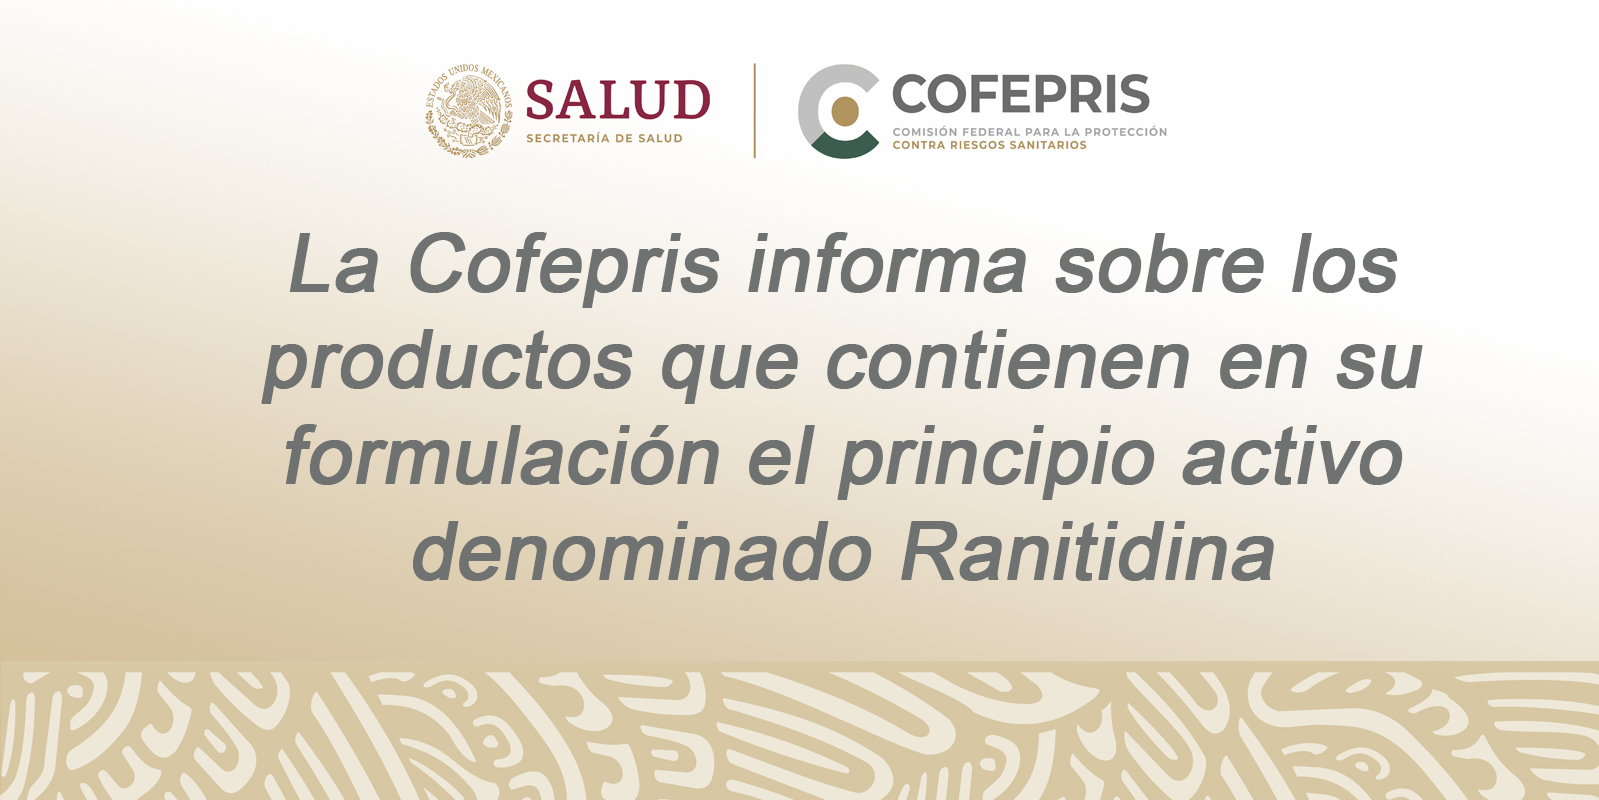 La Cofepris informa sobre los productos que contienen en su formulación el principio activo denominado Ranitidina